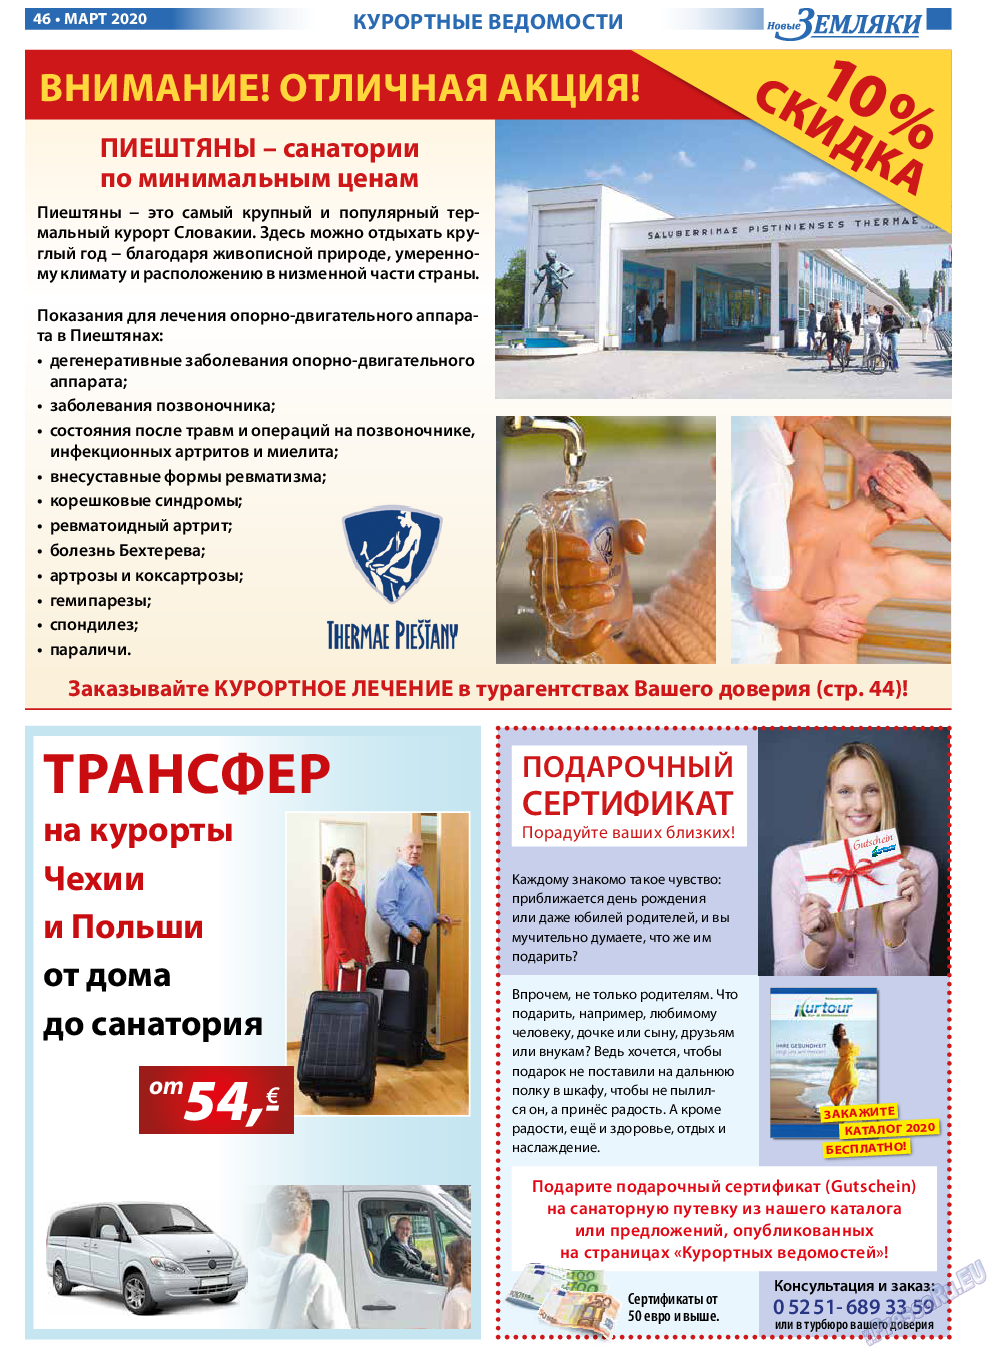 Новые Земляки, газета. 2020 №3 стр.46